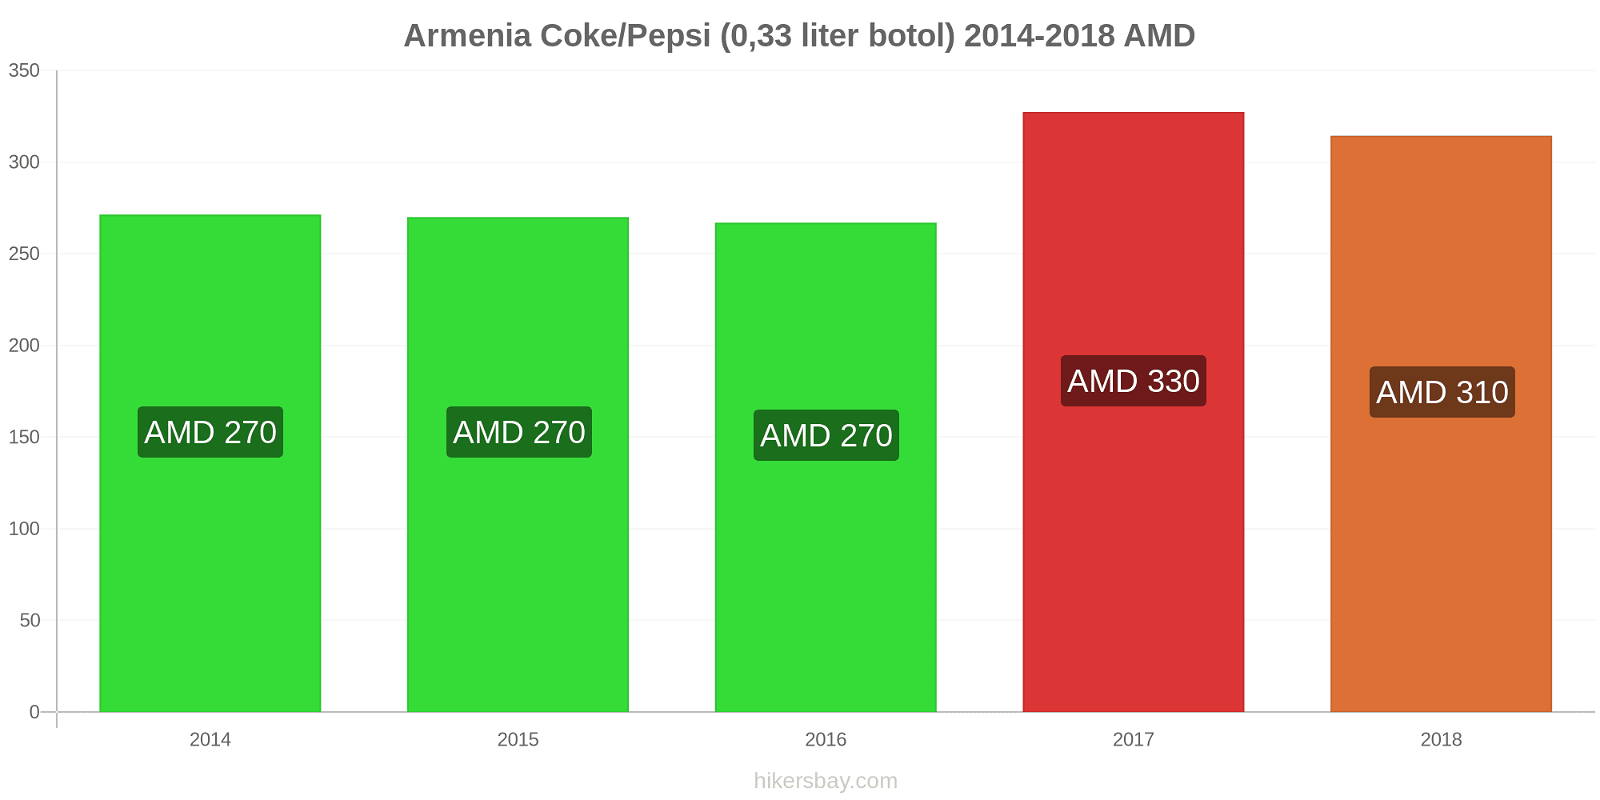 Armenia perubahan harga Coca-Cola/Pepsi (botol 0.33 liter) hikersbay.com